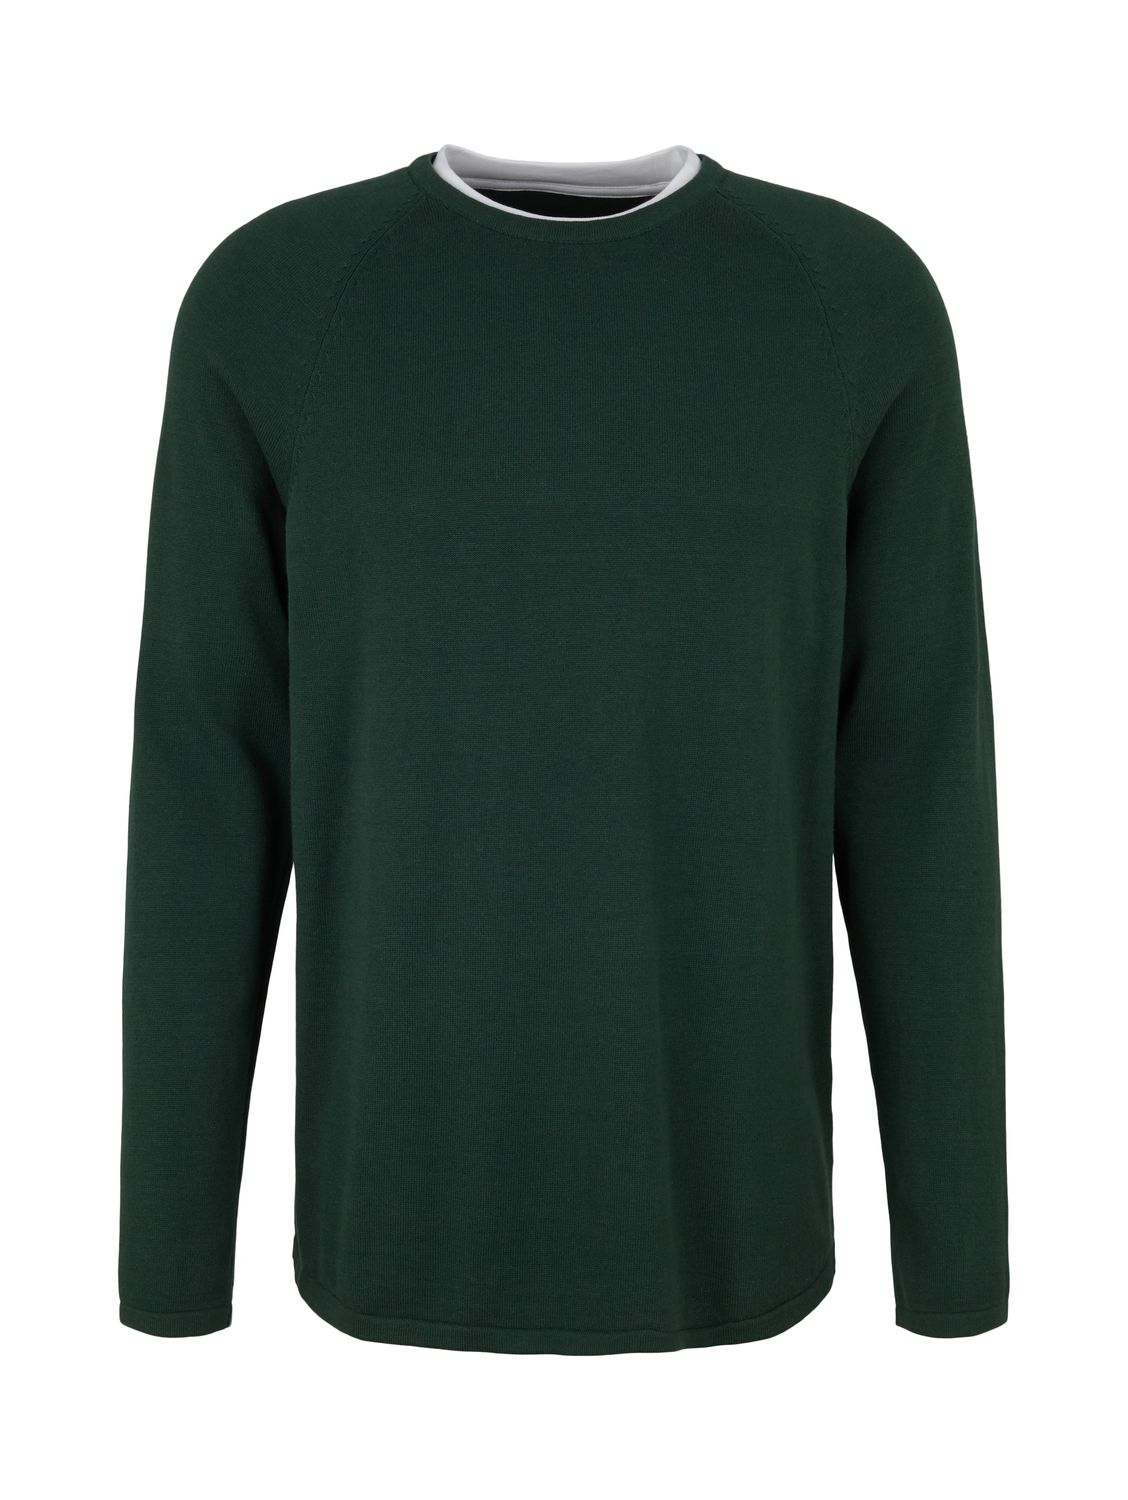 Пуловер TOM TAILOR Denim BASIC, зеленый свитшот tom tailor размер xs зеленый